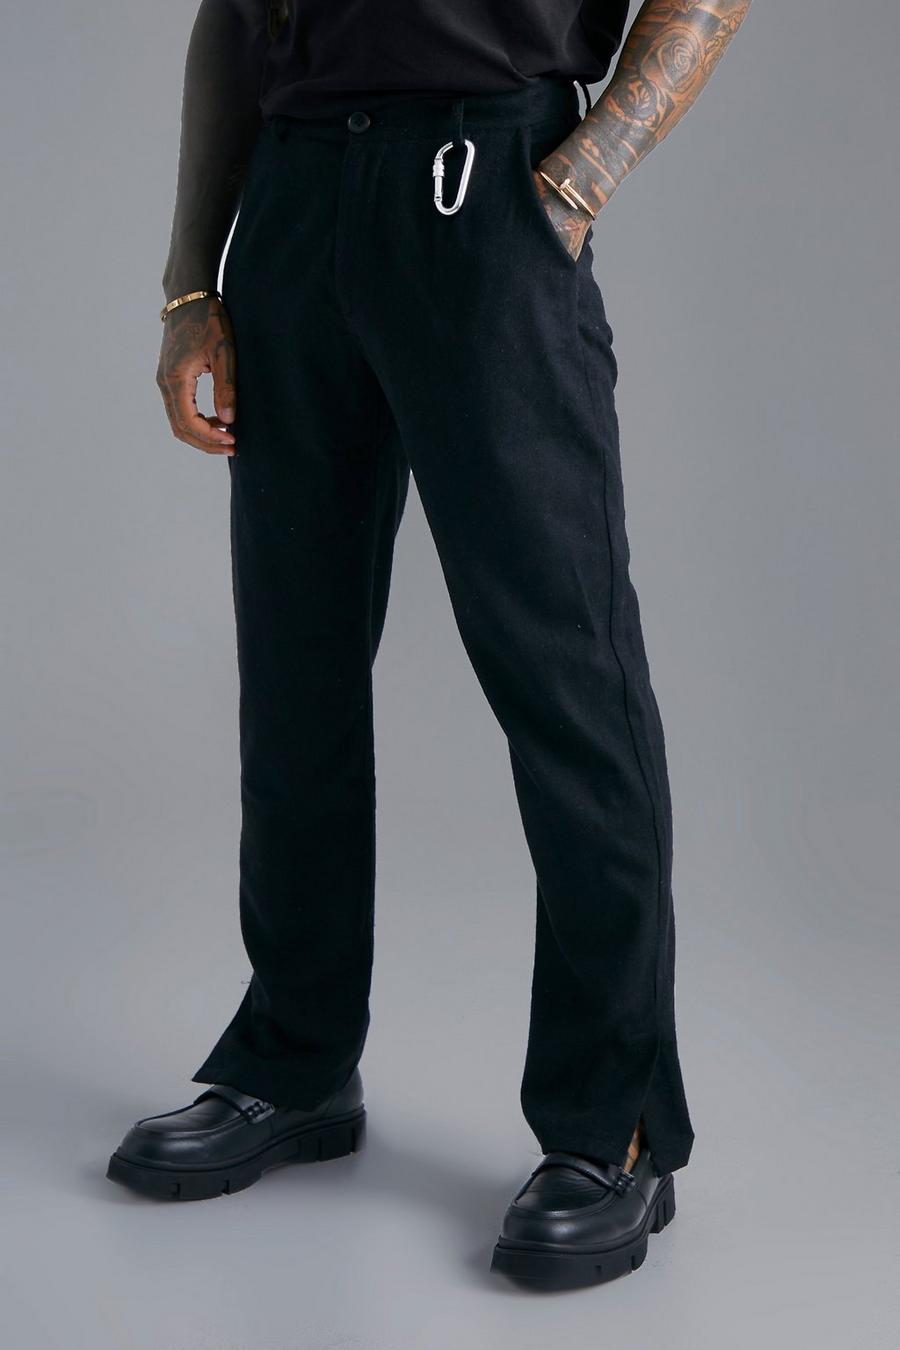 Pantaloni dritti effetto lana con spacco sul fondo e vita fissa, Black negro